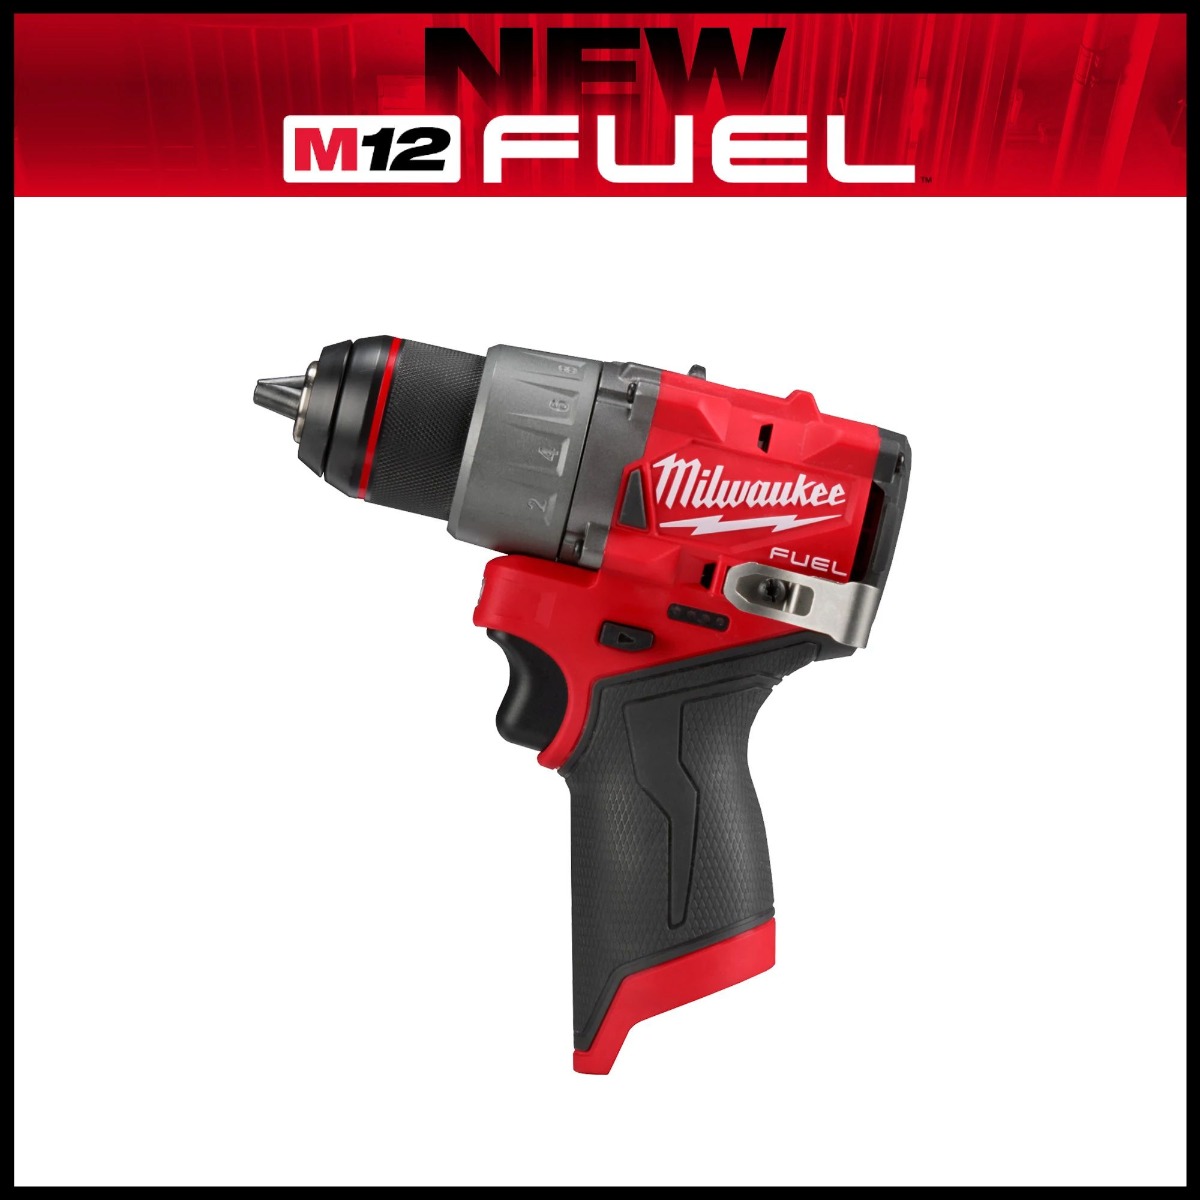 M12 FUEL™ 1/2" Drill/Driver